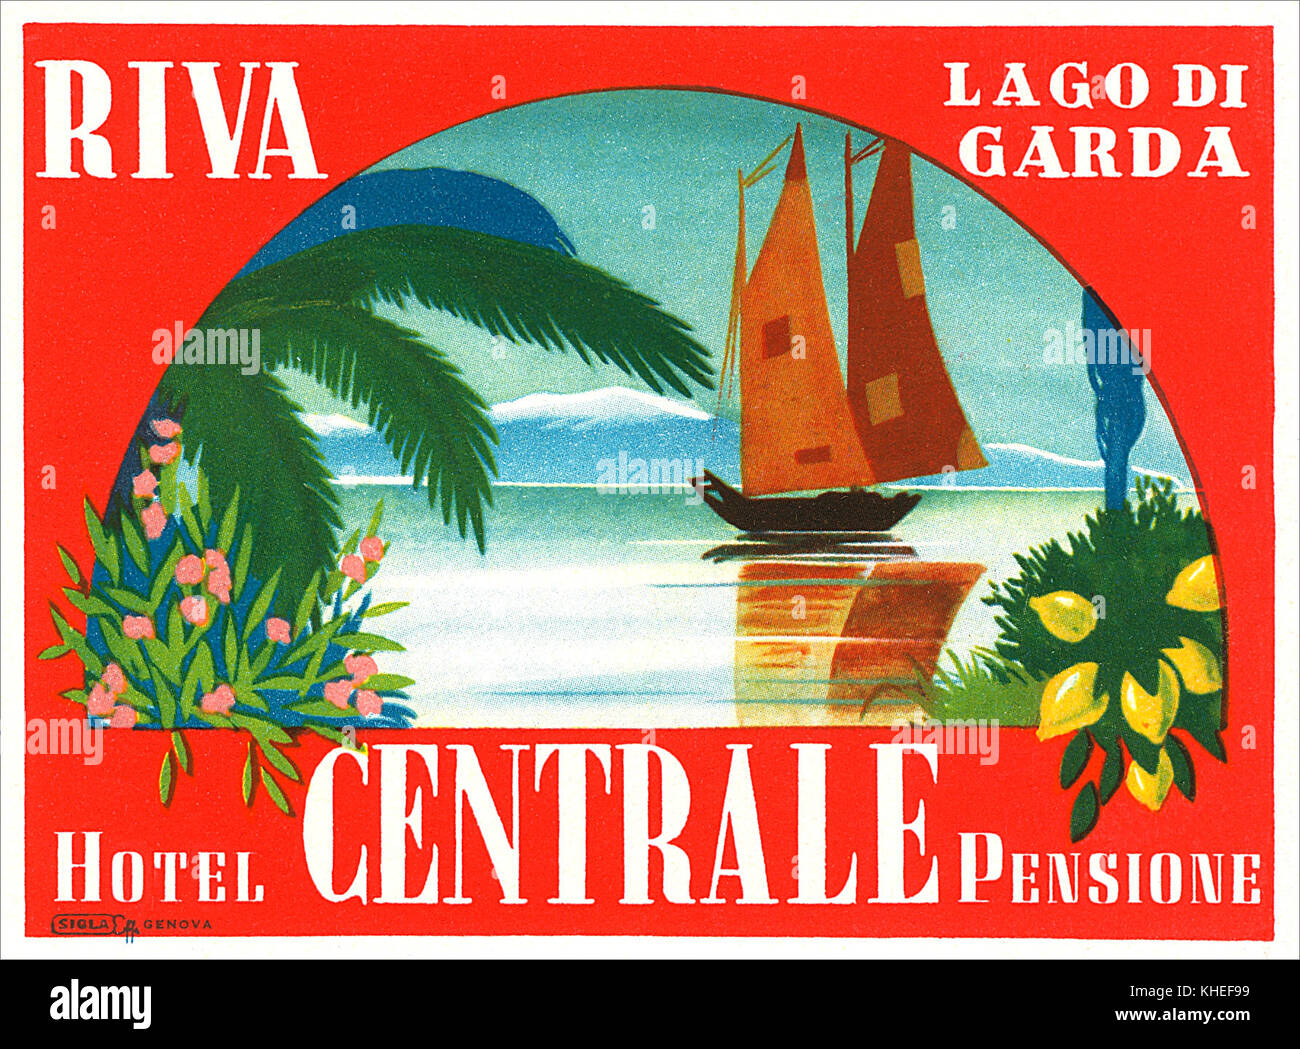 Vintage Gepäckanhänger für das Hotel Centrale Pensione in Riva La Garda am Ufer des Gardasees, Italien. Jetzt als Hotel Centrale bekannt. Stockfoto